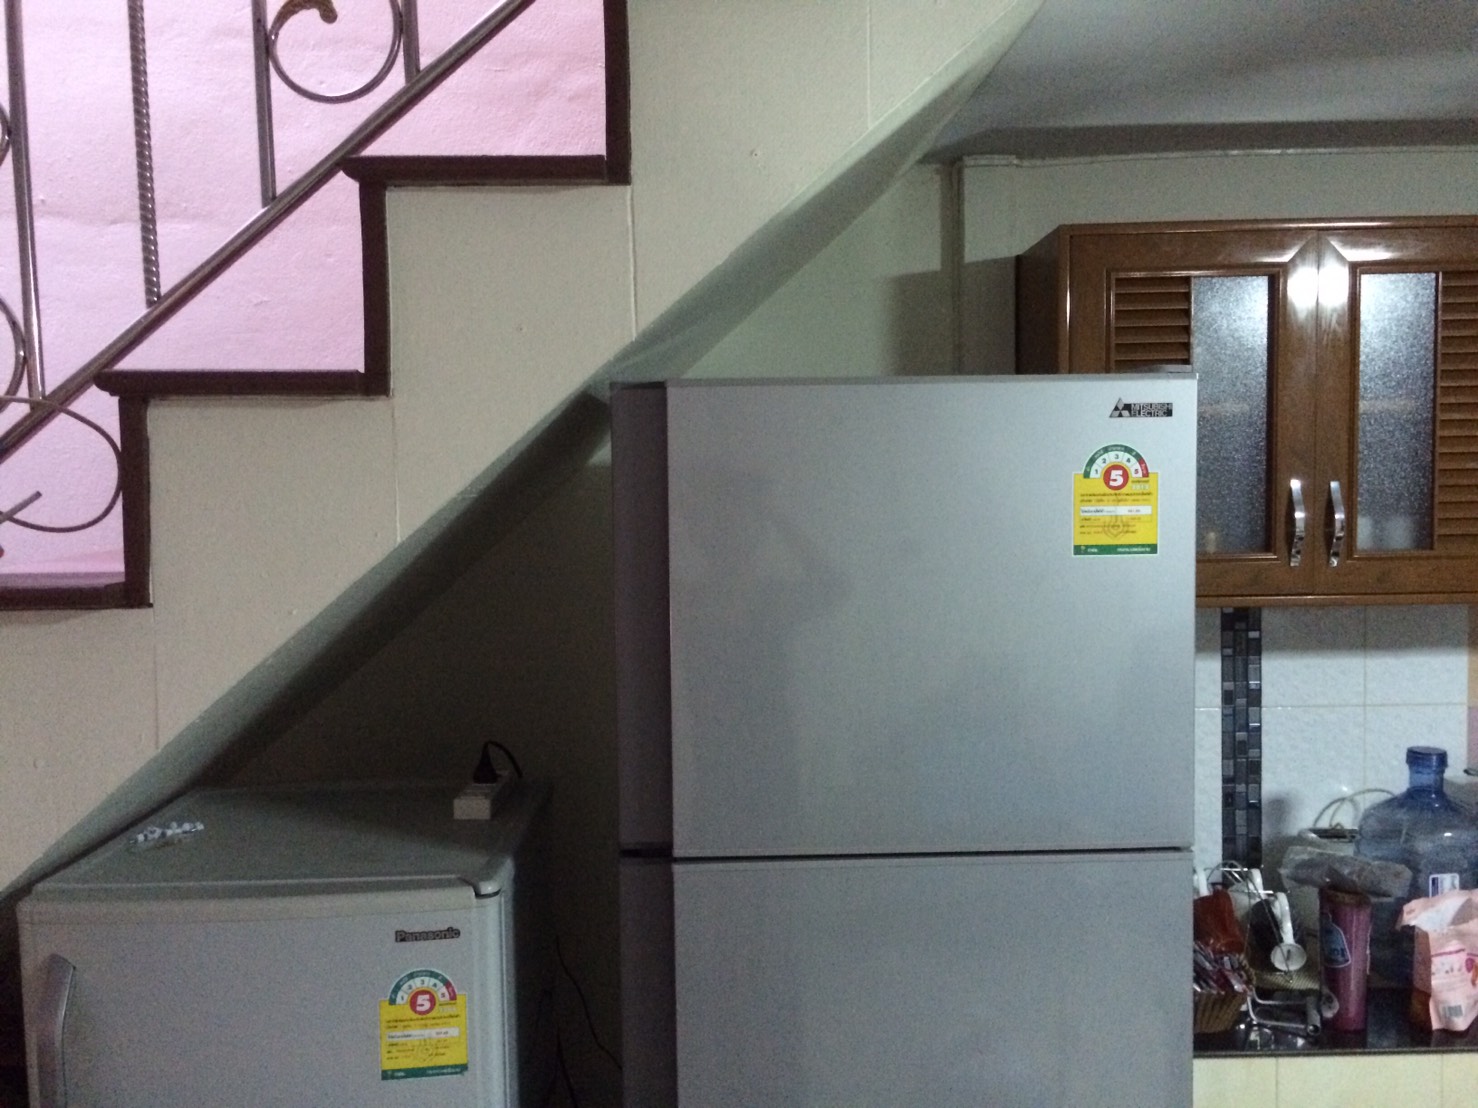 ถ้าวางตู้เย็น 2เครื่องติดๆกัน จะมีผลกับอายุการใช้งานของเครื่องหรือเปล่าครับ  - Pantip